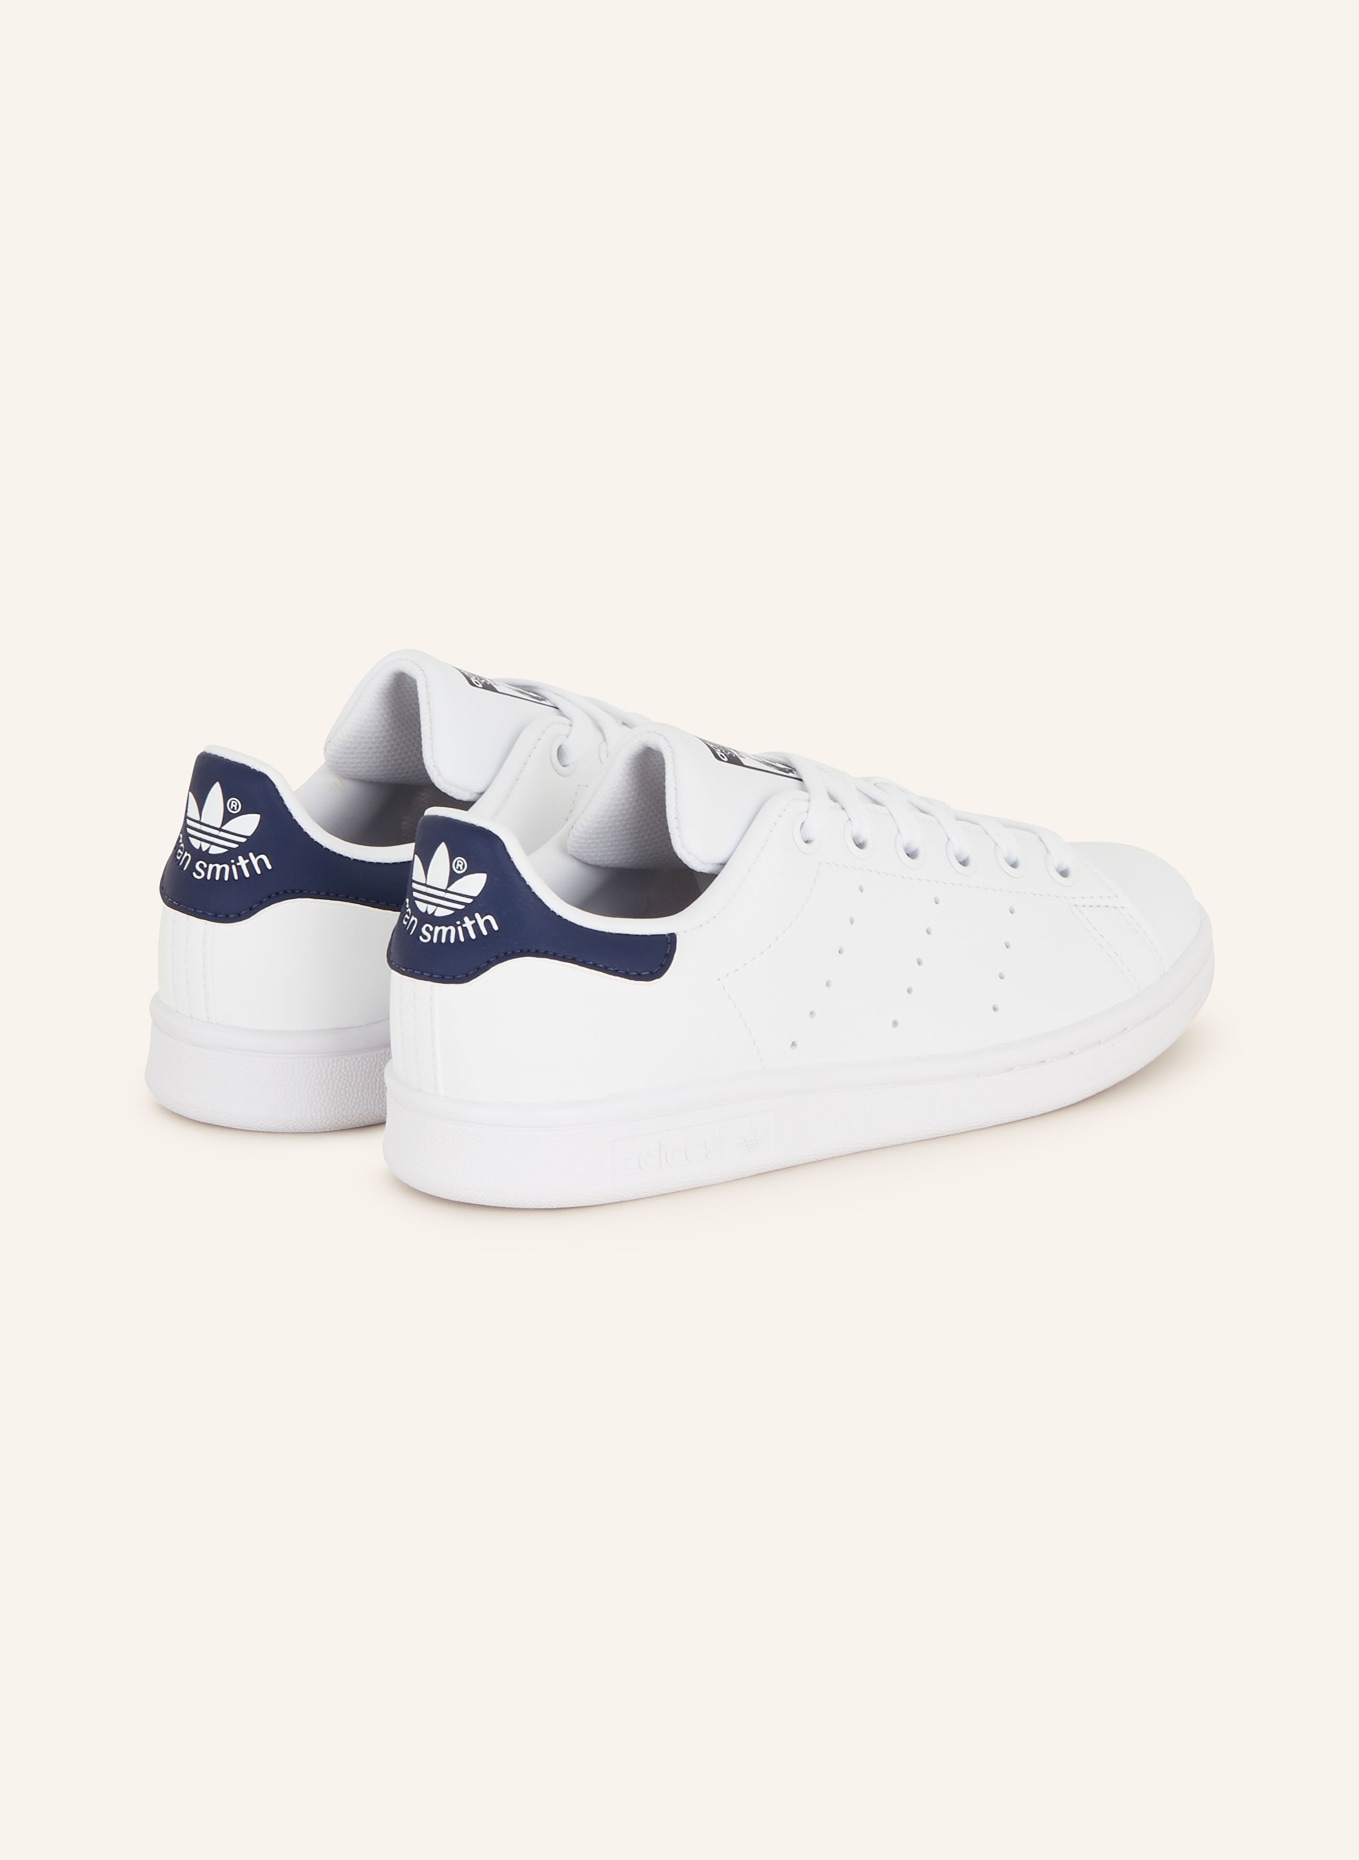 Originals dunkelblau Sneaker SMITH in STAN weiss/ adidas